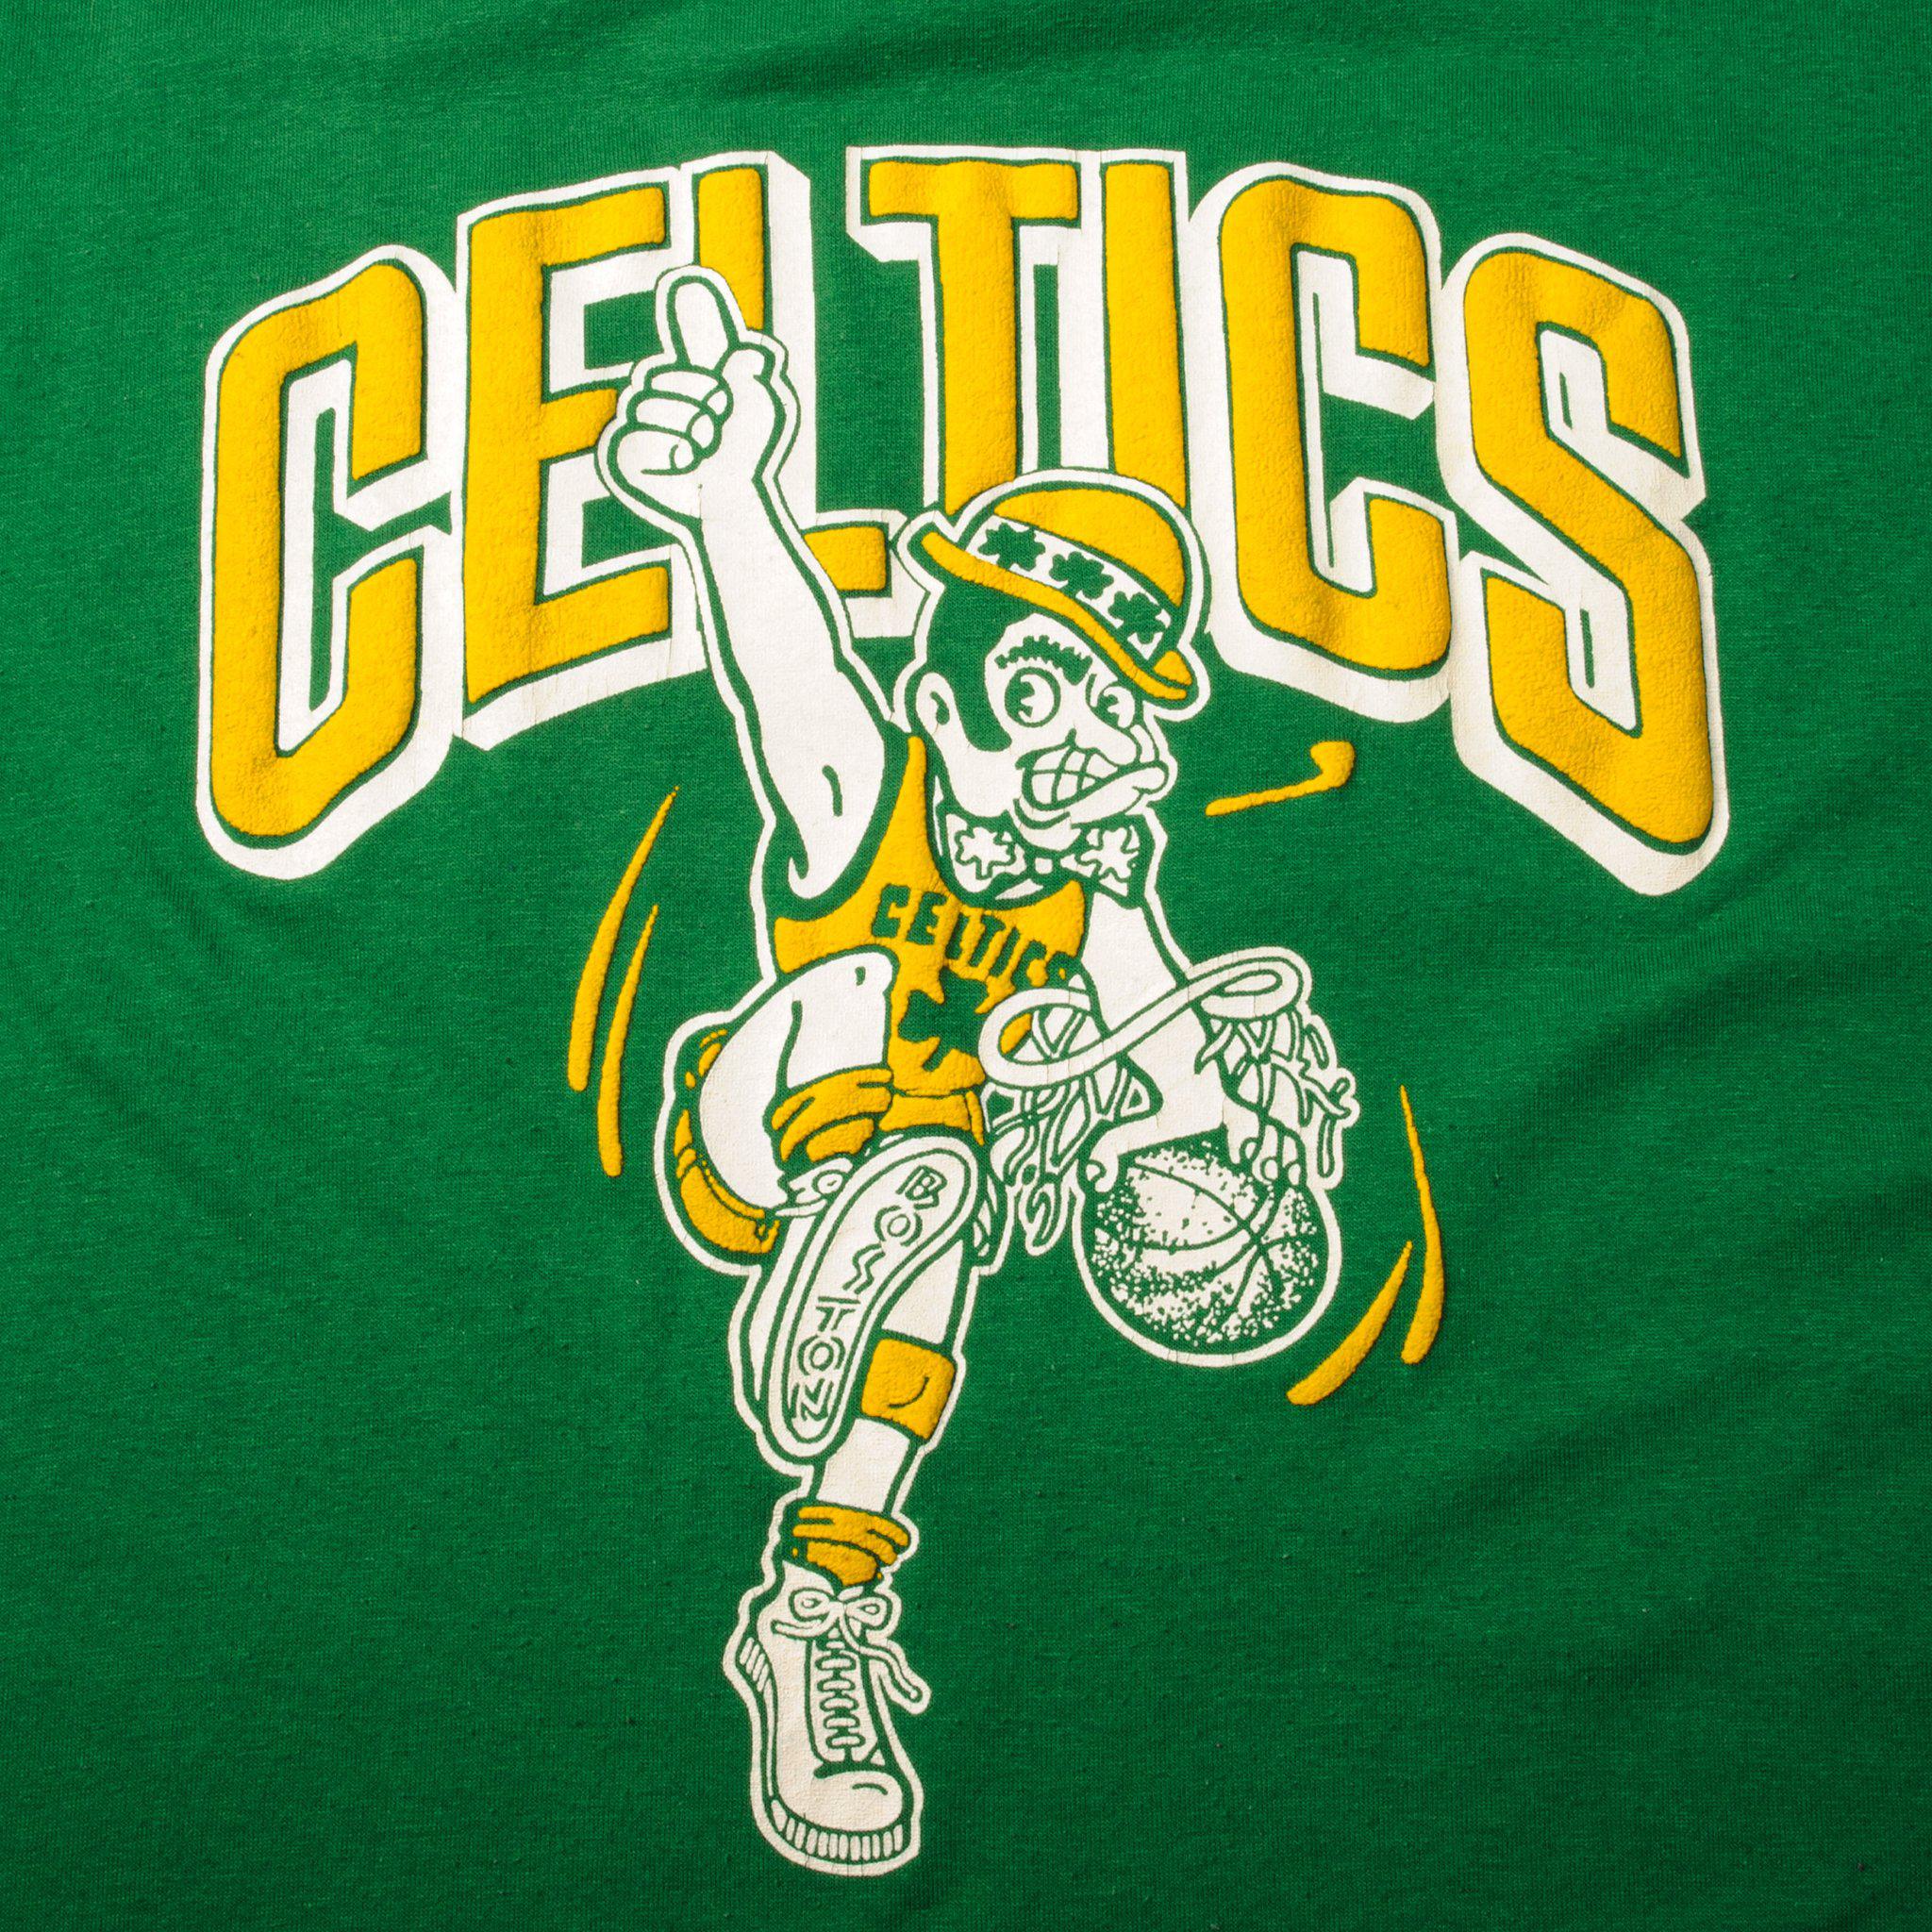 Boston Celtics 1986 Nba Champions T-Shirt - Yesweli